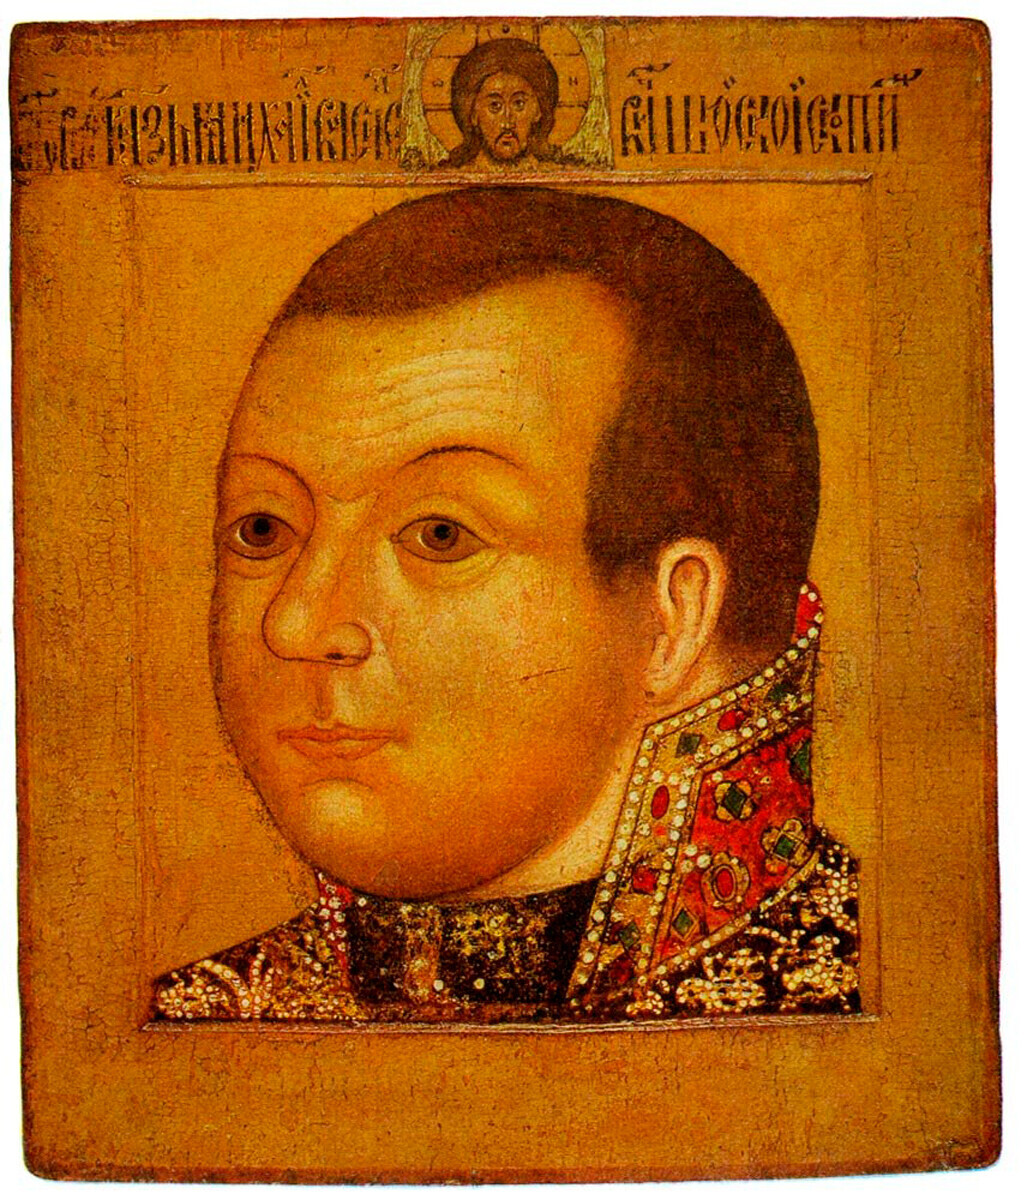 Mijaíl Skopin-Shuisky, comandante de guerra ruso, 1610. Mijaíl tenía sólo 23 años cuando murió, y no llevaba barba. Lleva el pelo corto, corte habitual entre los militares.